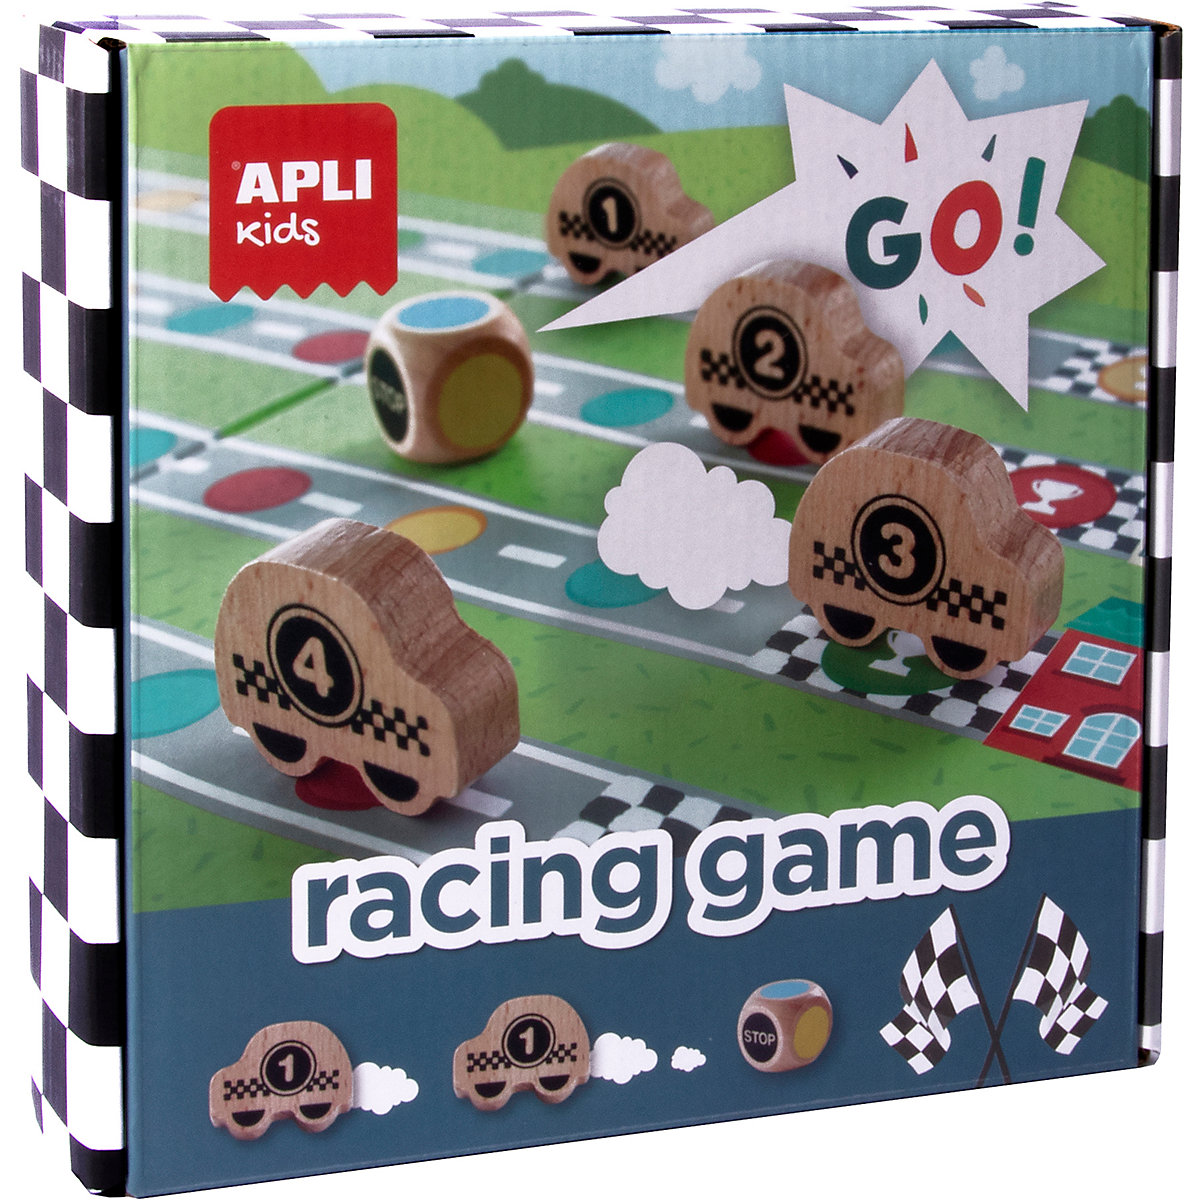 APLI Kids Autorennen Brettspiel (Racing Game)